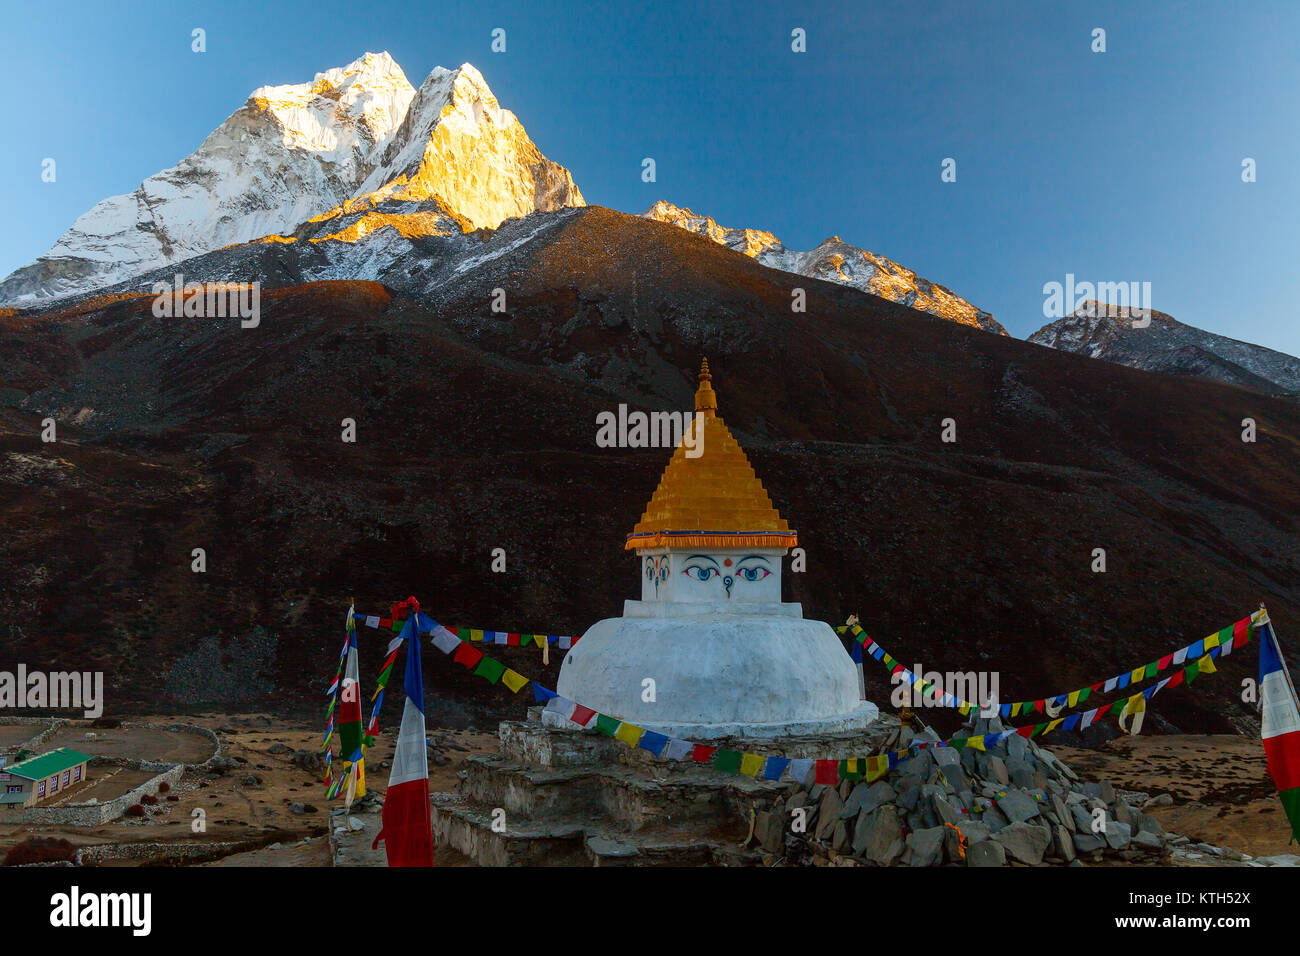 Buddhist stupa on mountain trekking path in Himalayas, Nepal. Stock Photo